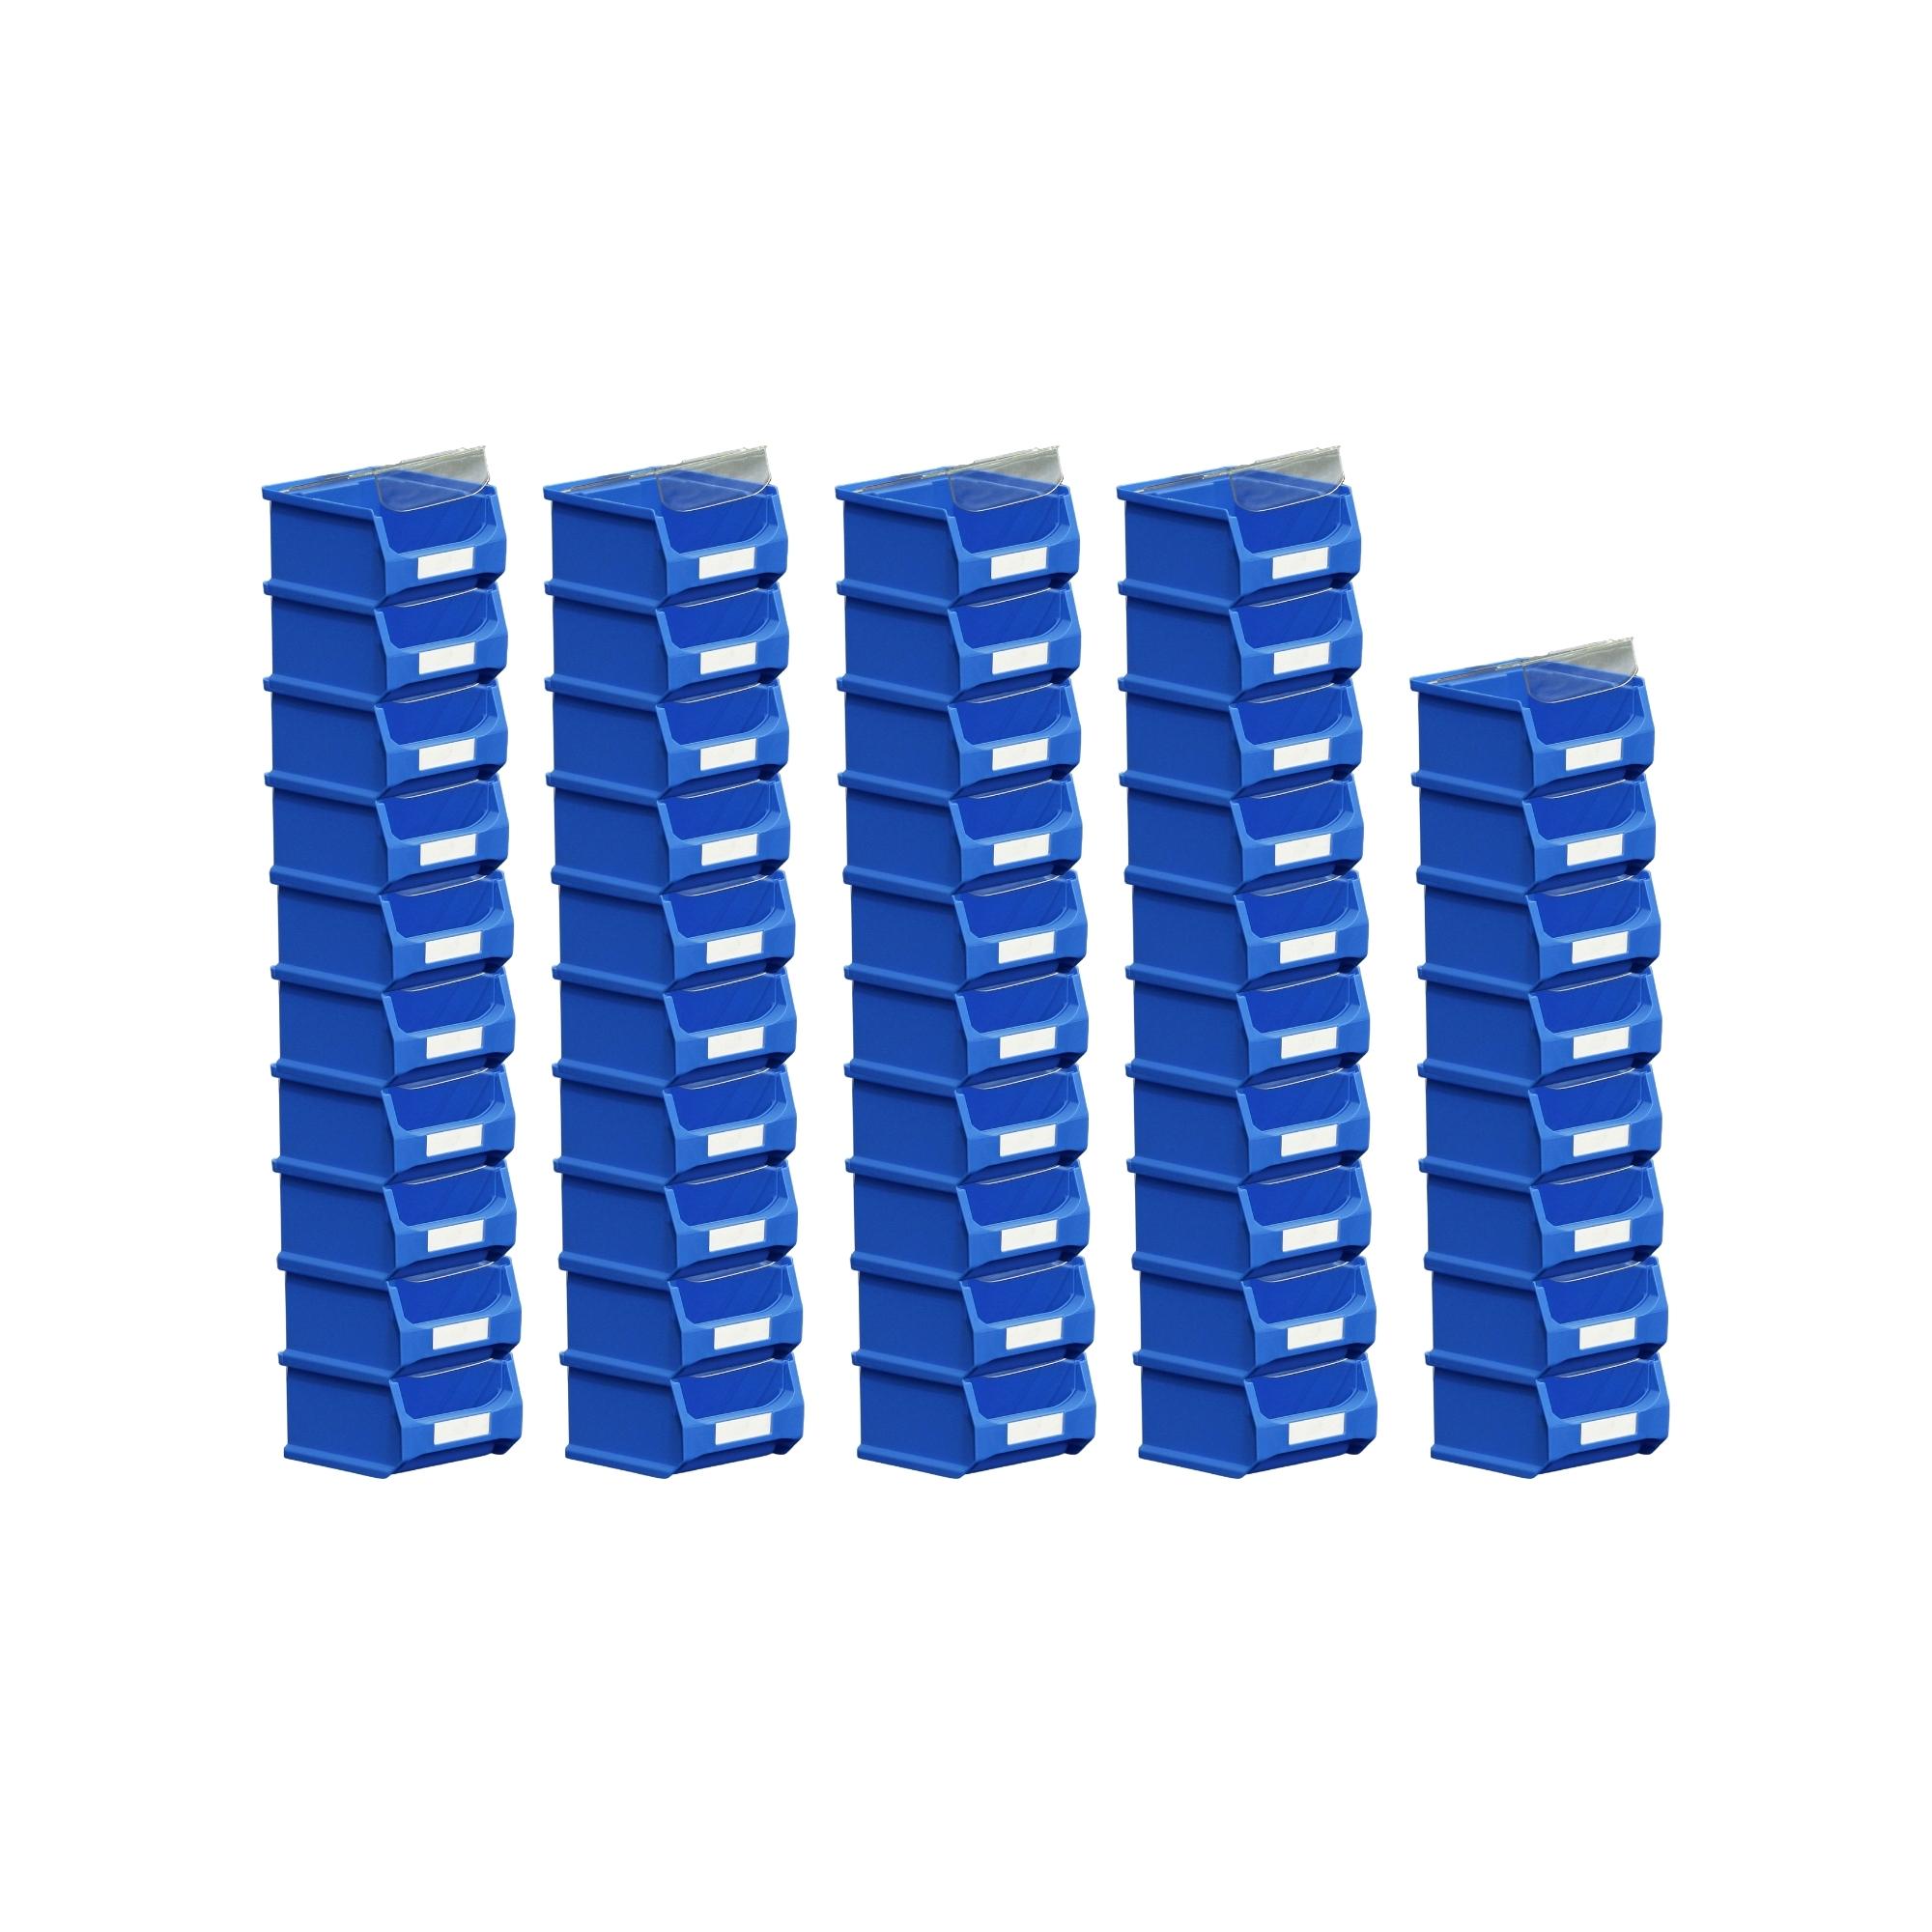 SuperSparSet 48x Blaue Sichtlagerbox 1.0 mit Abdeckung | HxBxT 6x10x10cm | 0,4 Liter | Sichtlagerbehälter, Sichtlagerkasten, Sichtlagerkastensortiment, Sortierbehälter